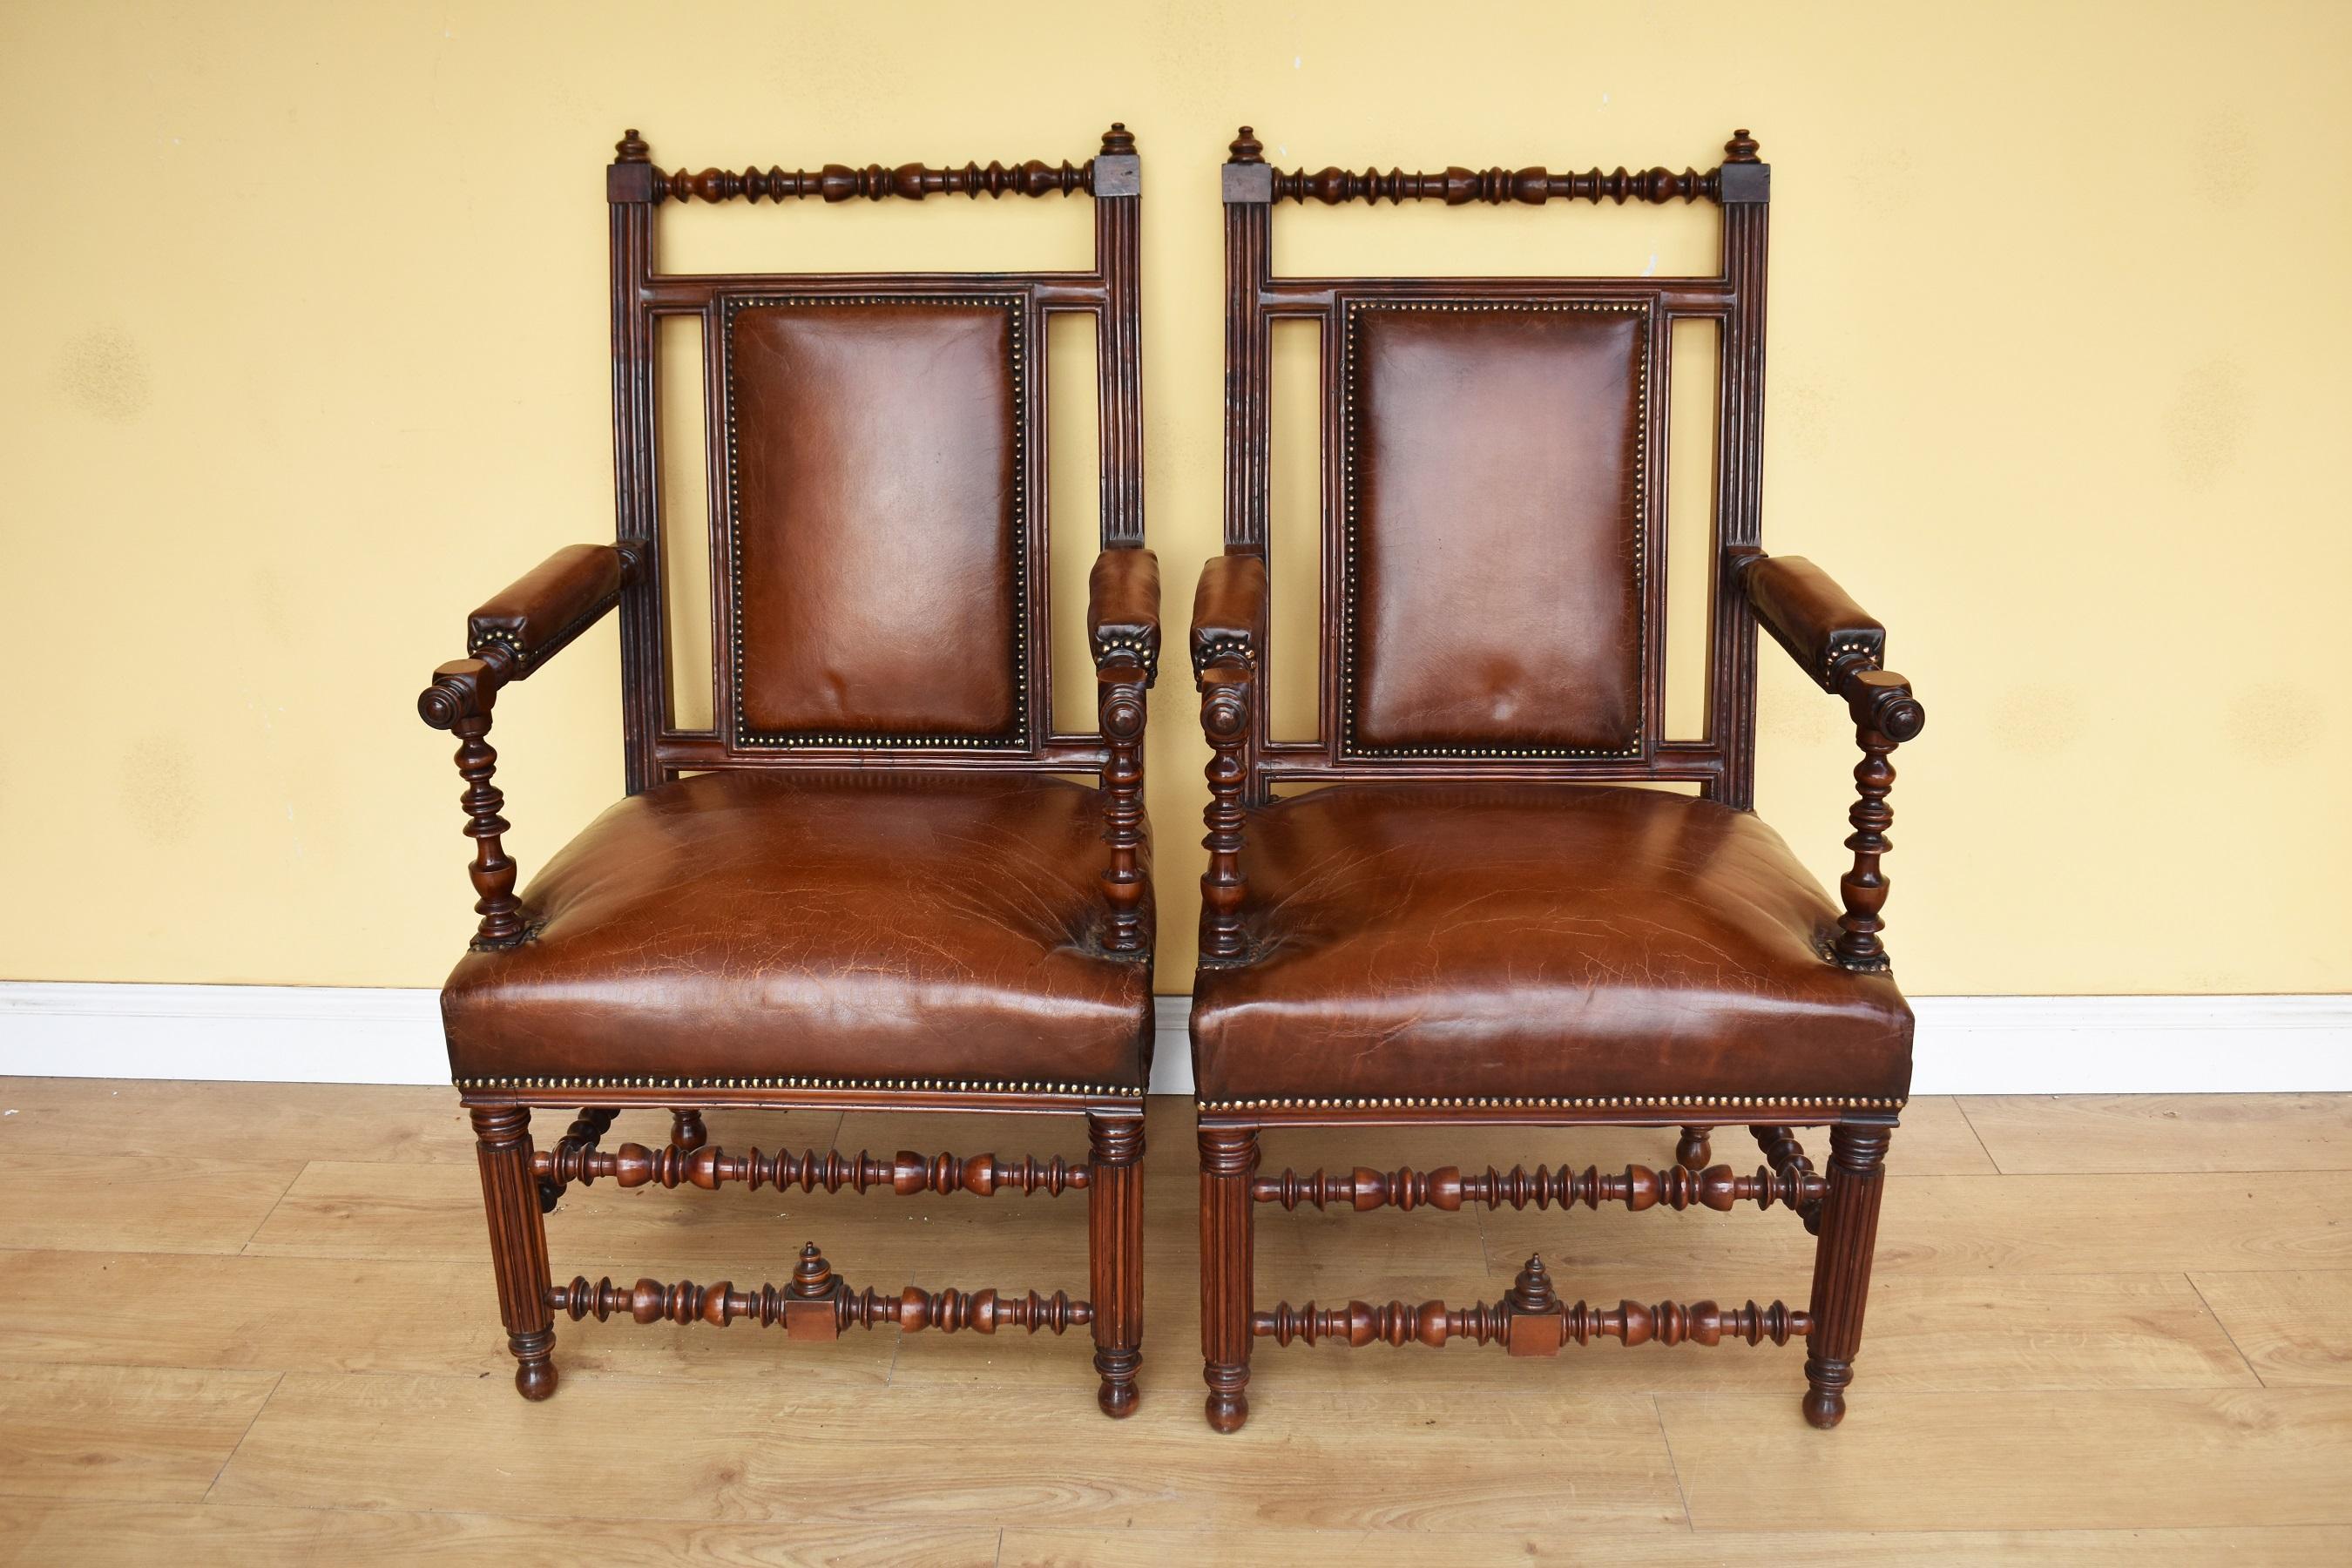 Il s'agit d'une paire de fauteuils gothiques réformés en noyer et en cuir de bonne qualité datant du 19e siècle. Les deux fauteuils ont des cadres et des châssis ornementés et ont été fabriqués à la manière de Bruce Talbert. La structure des chaises